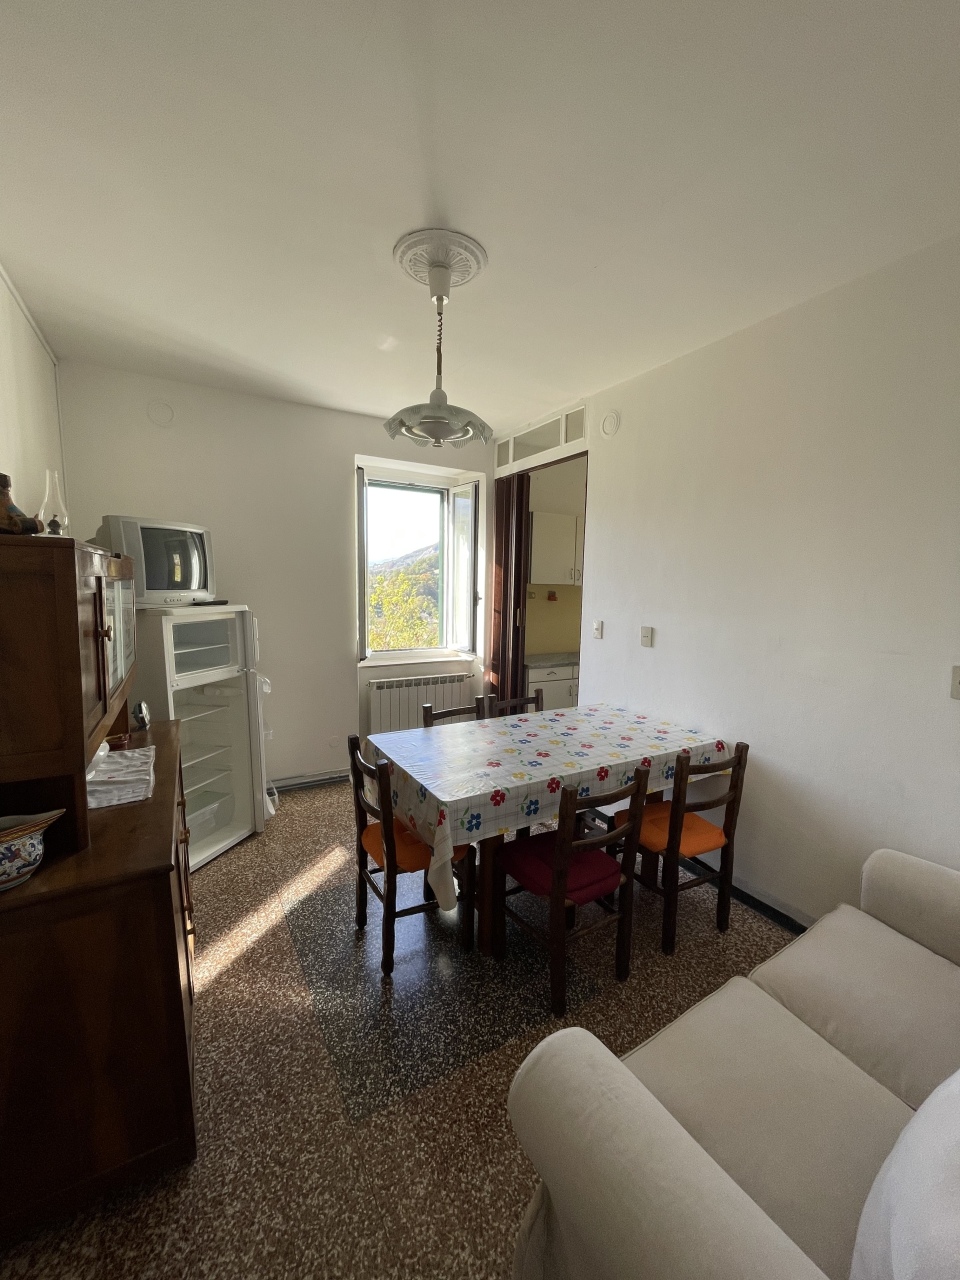 Appartamento in vendita a Borgo Val di Taro, 3 locali, prezzo € 65.000 | CambioCasa.it